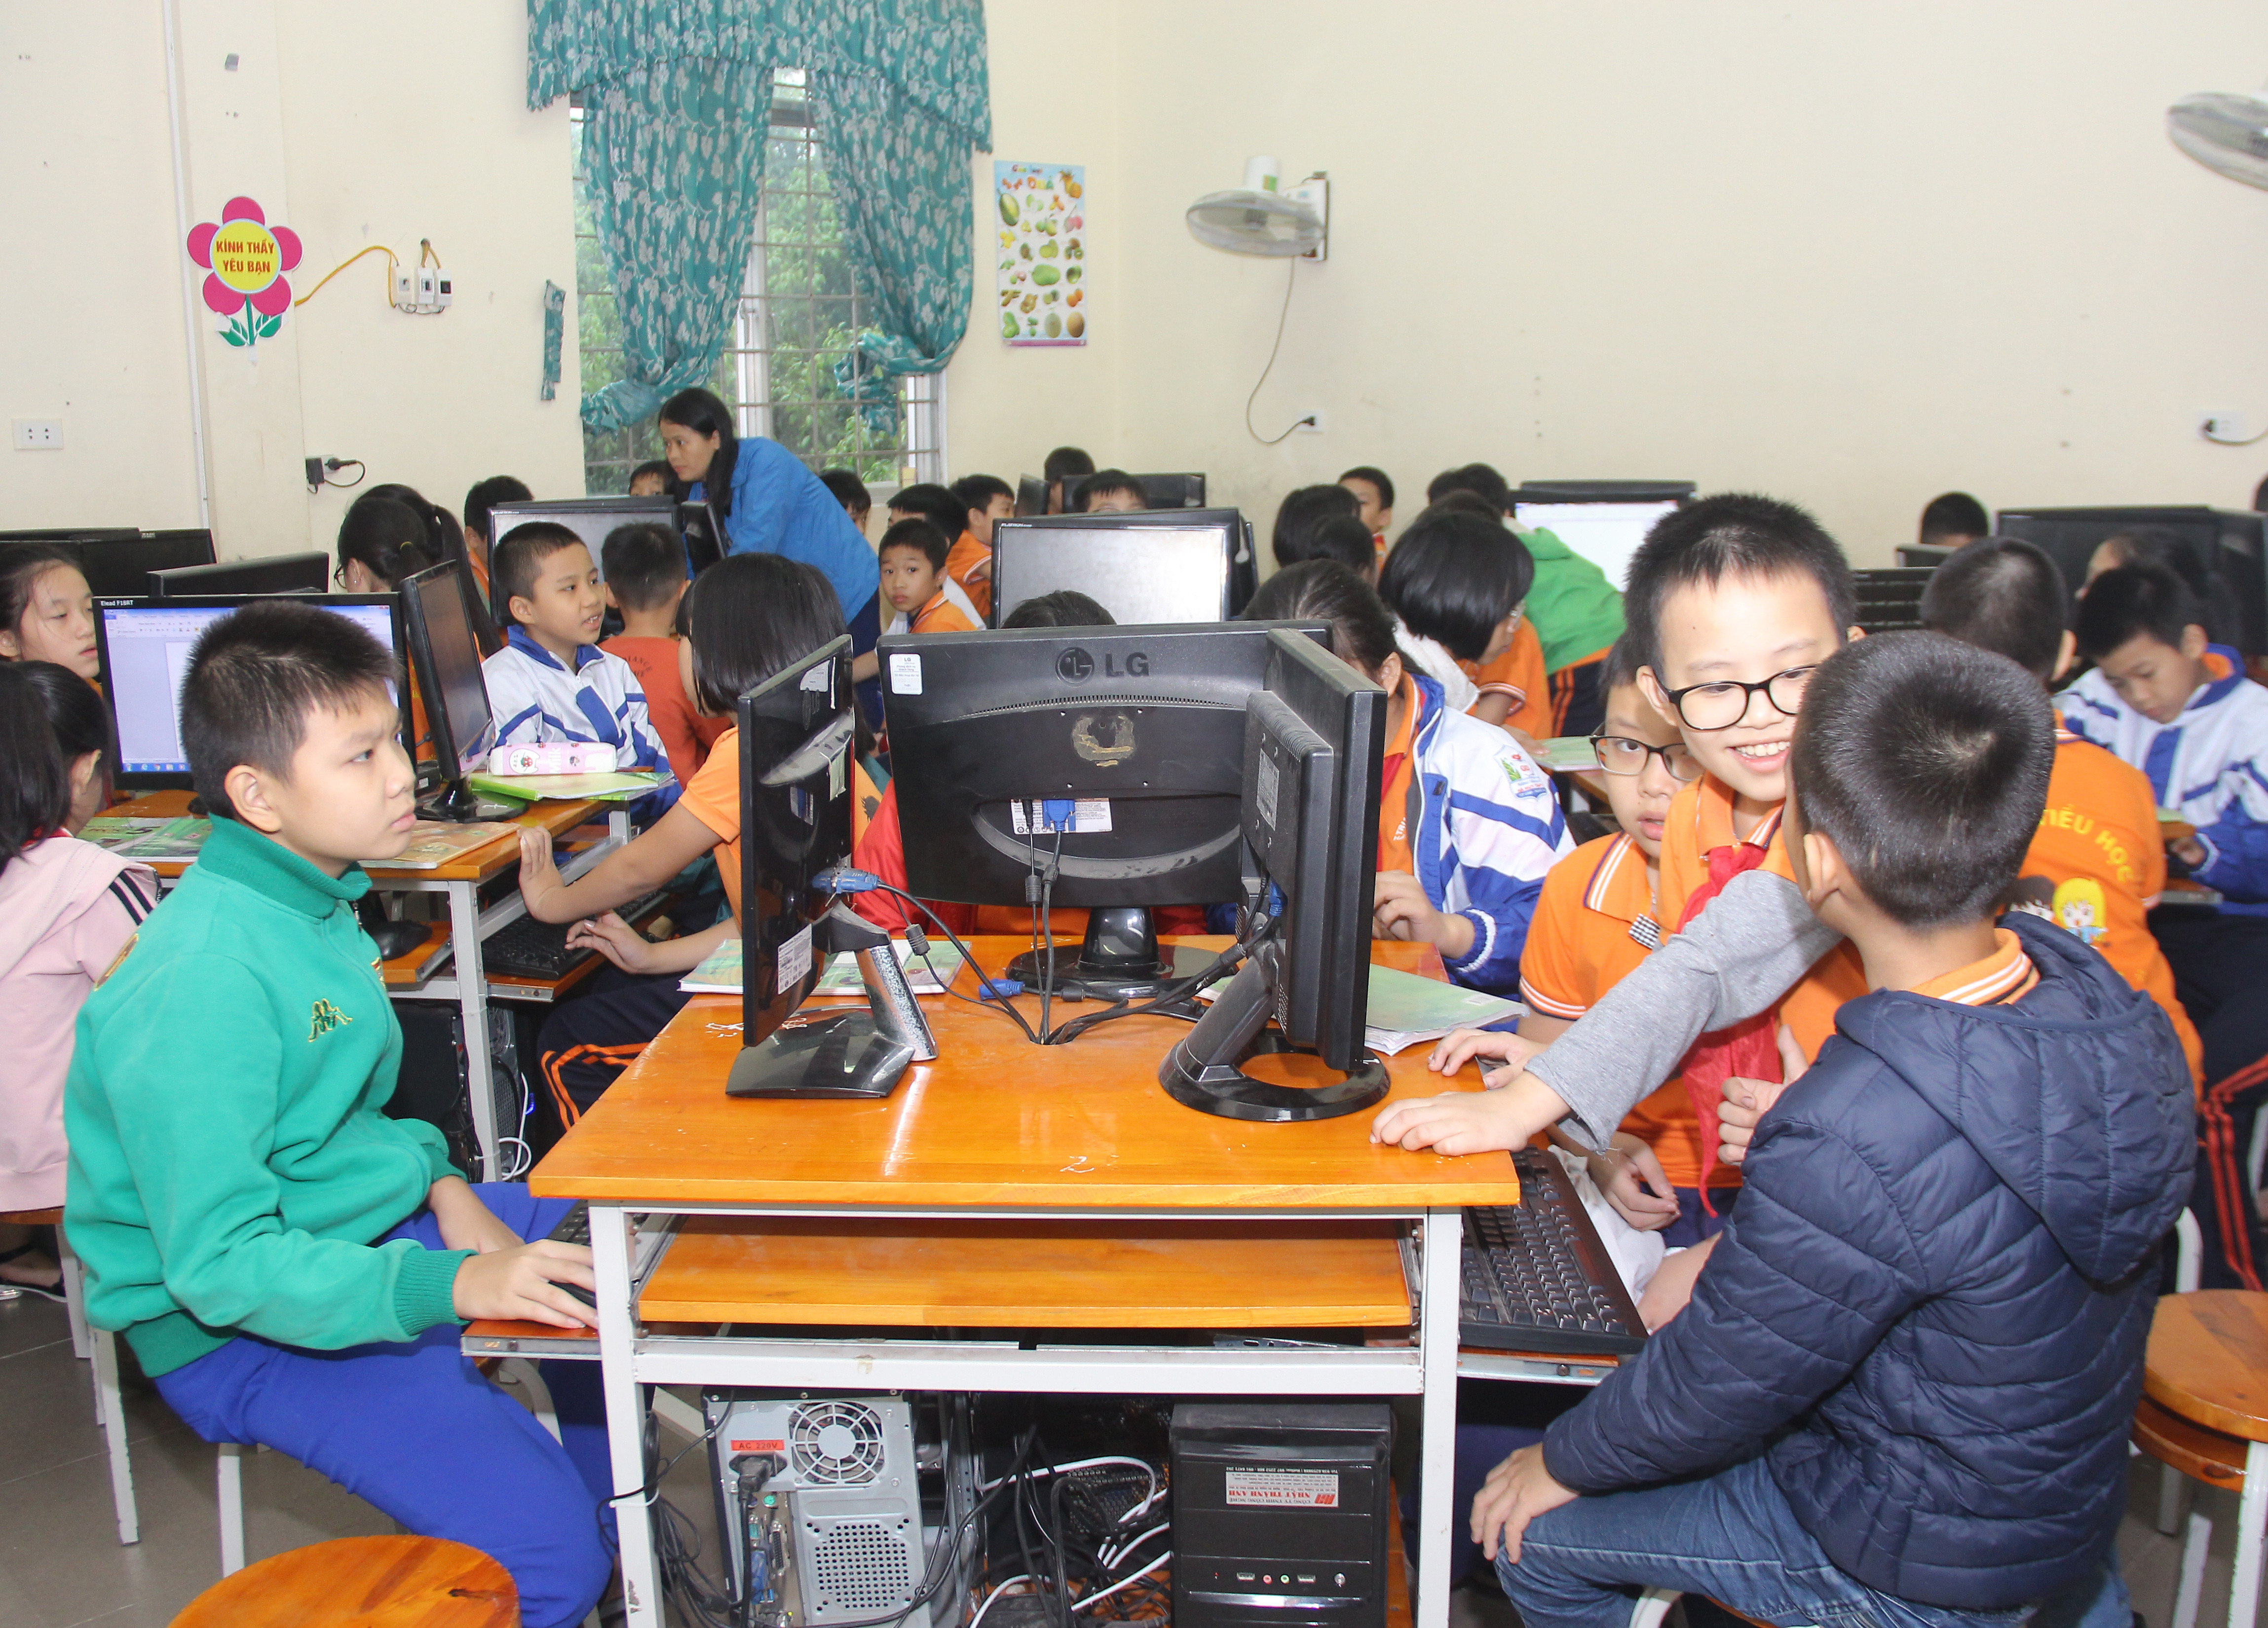 Phòng máy vi tính trường tiểu học Hà Huy Tập 2 quá chật hẹp. Ảnh: Mai Hoa